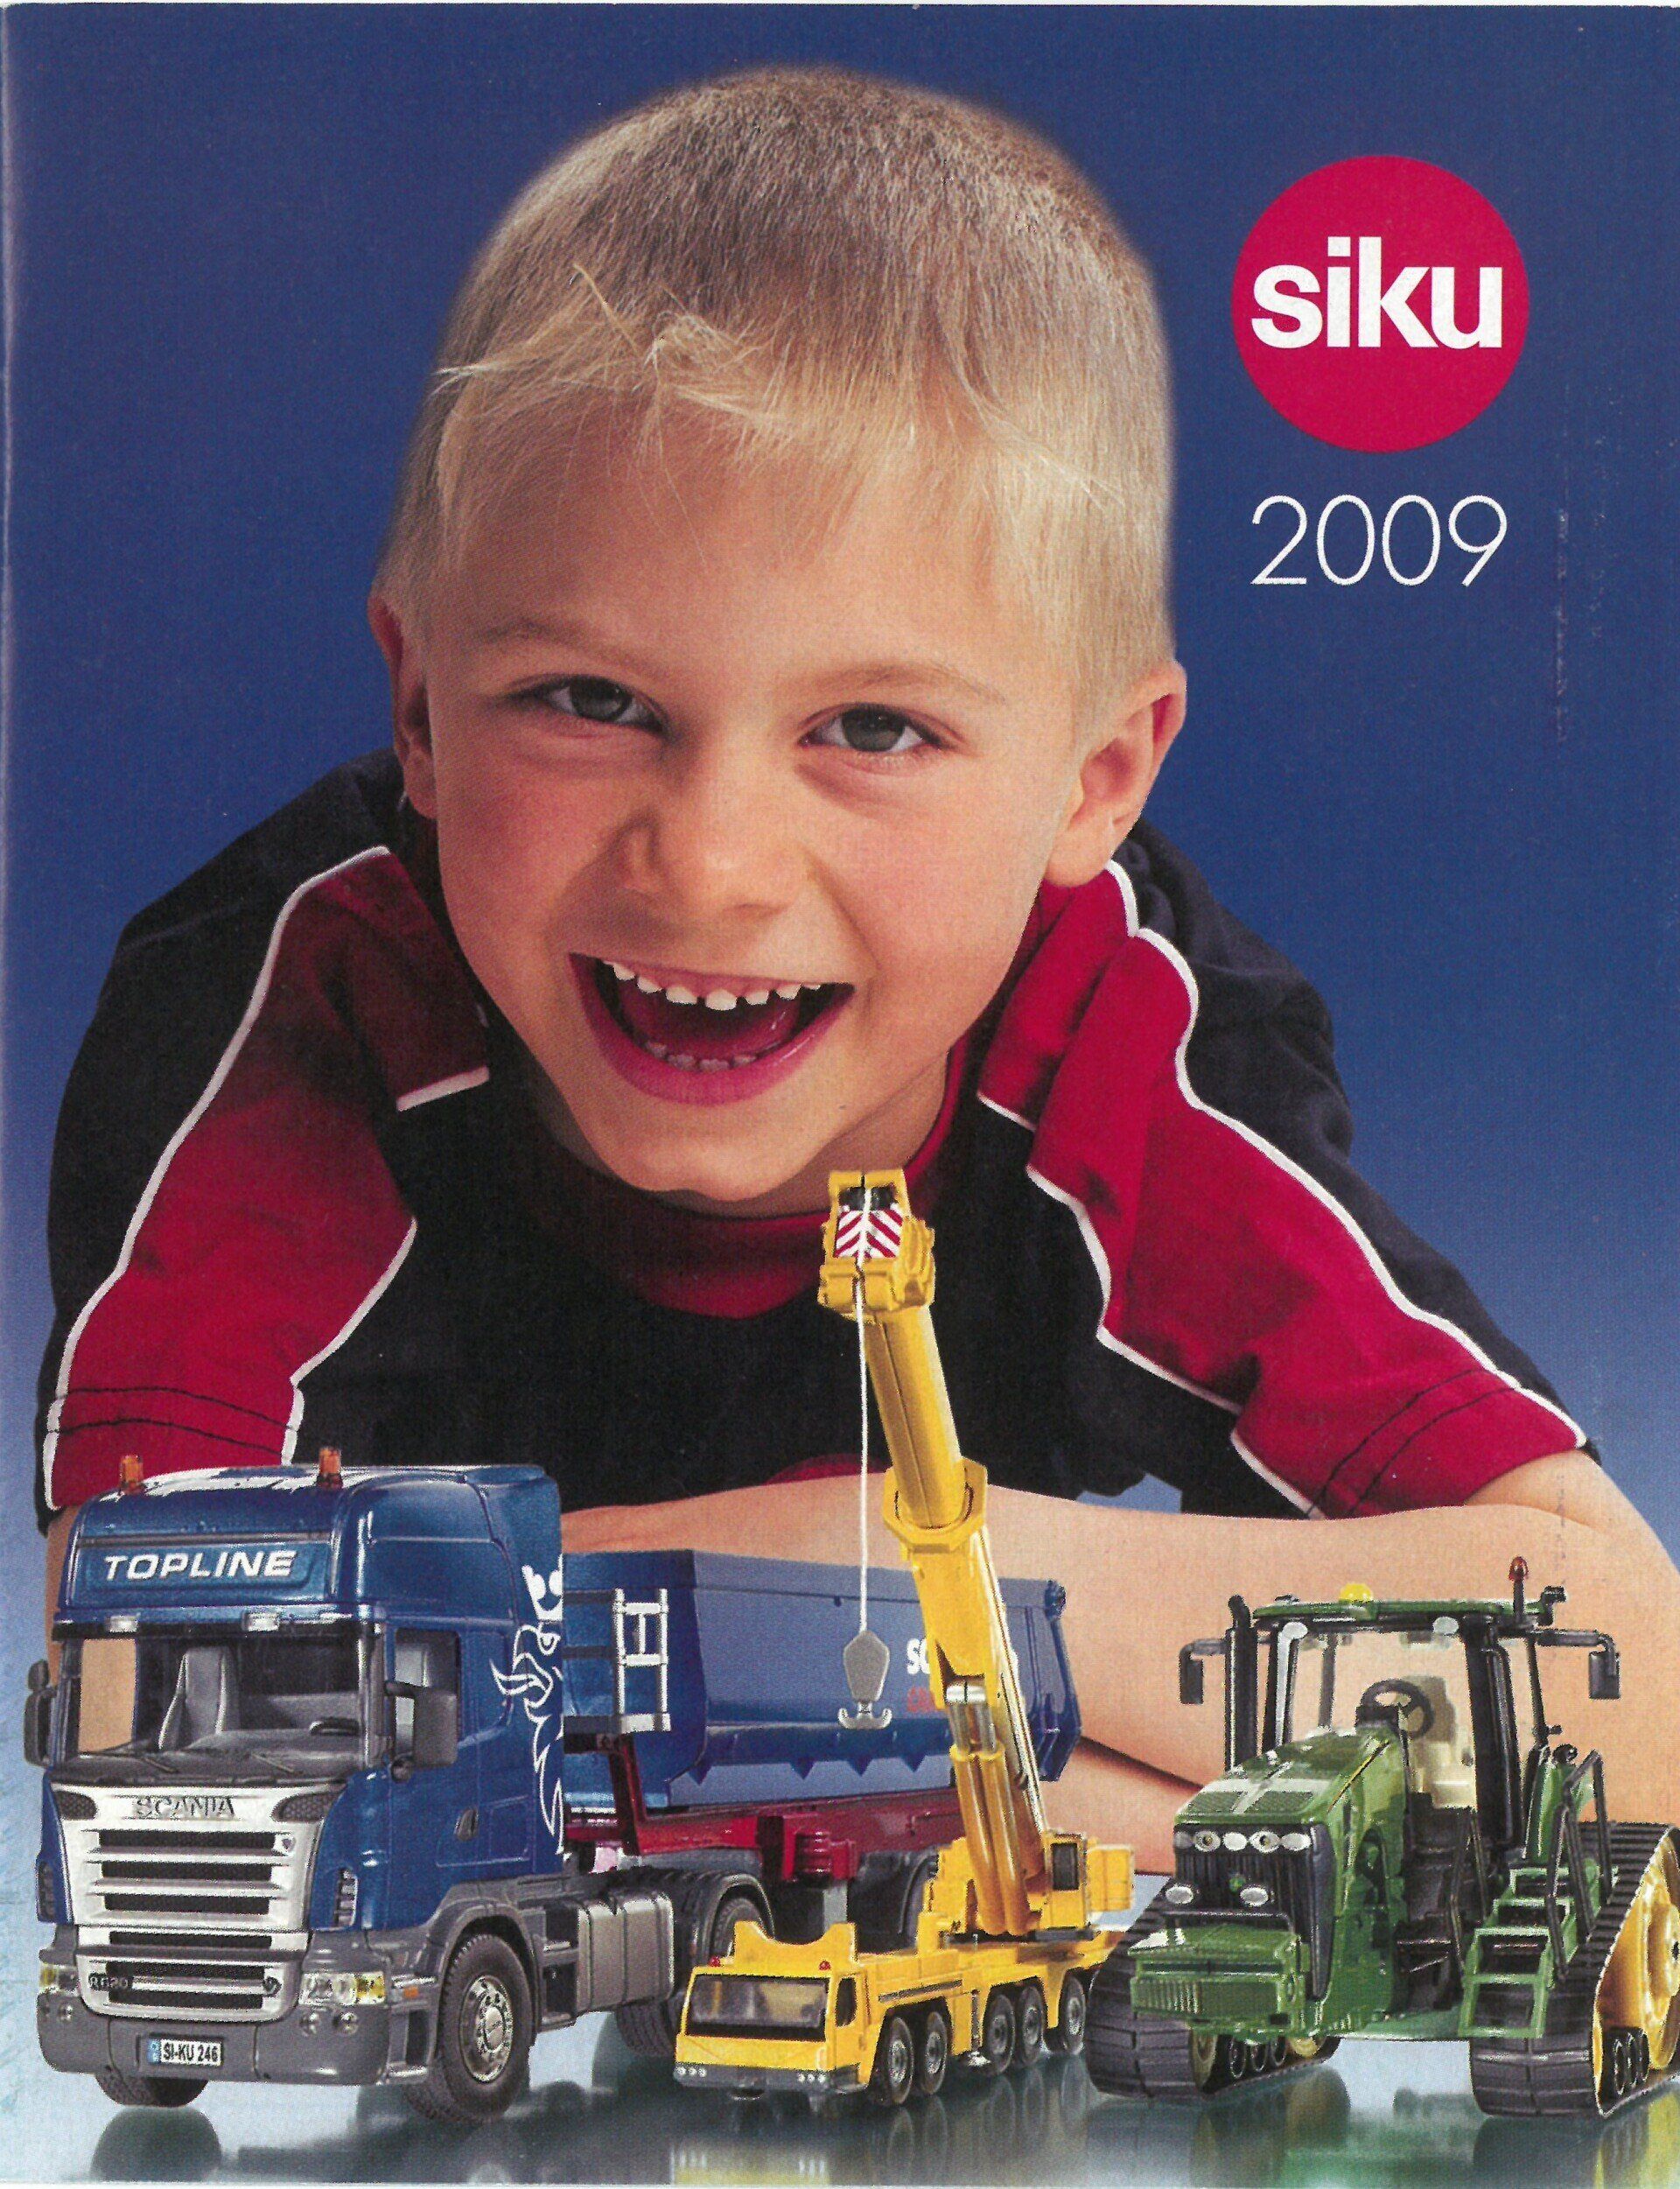 Siku catalogue 2009